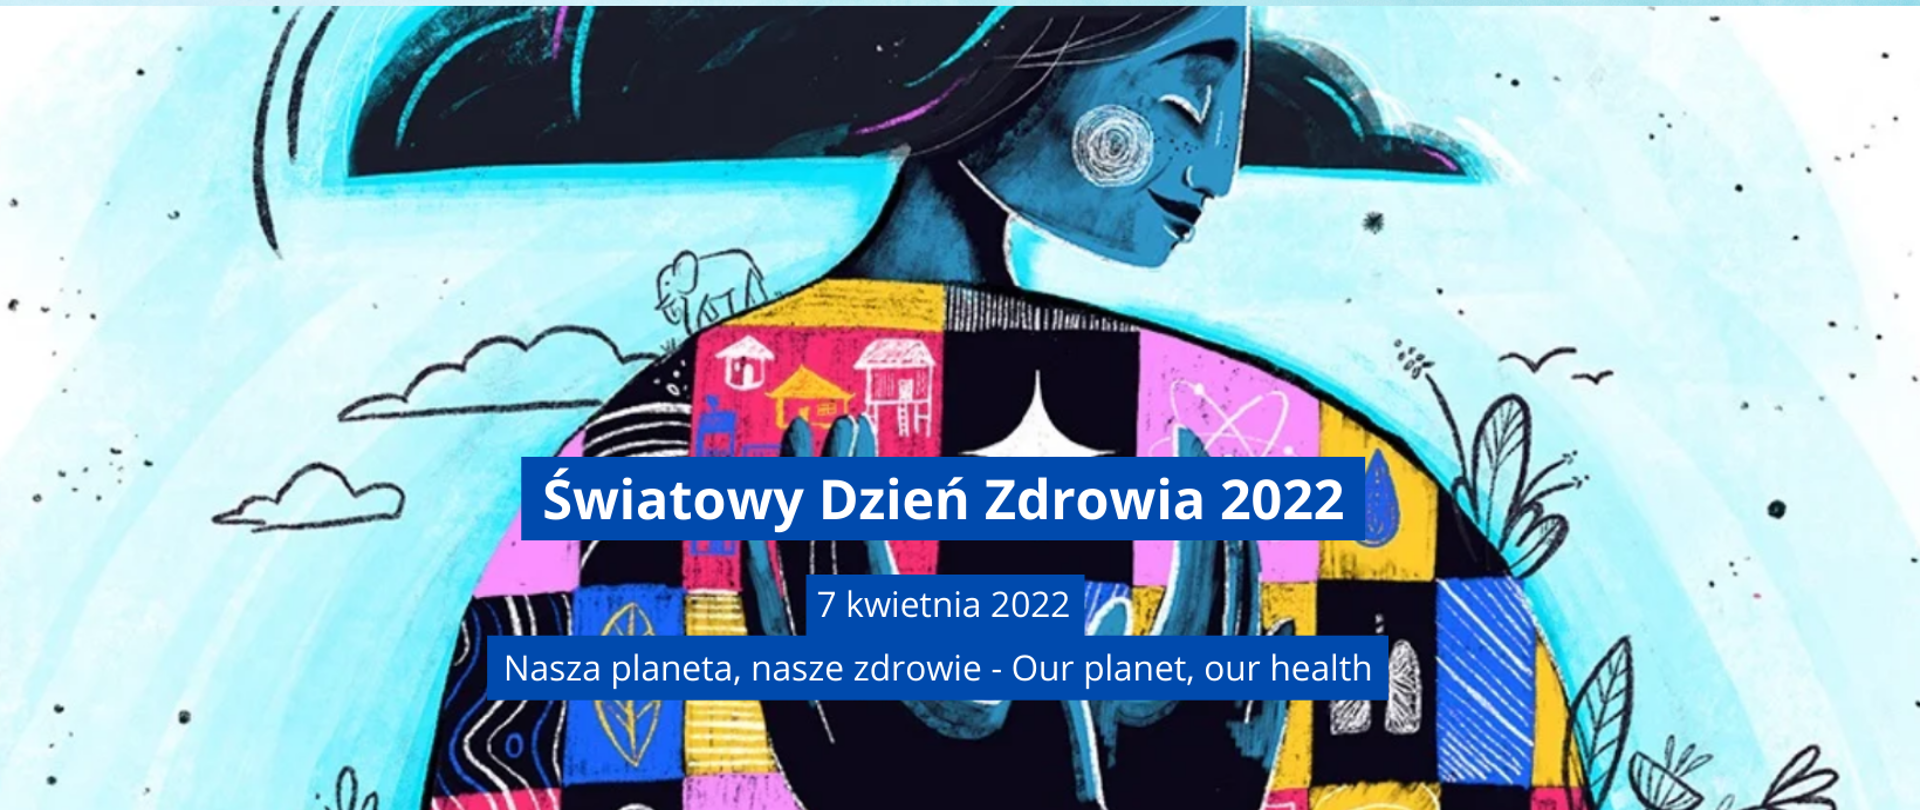 Swiatowy Dzien Zdrowia 2022